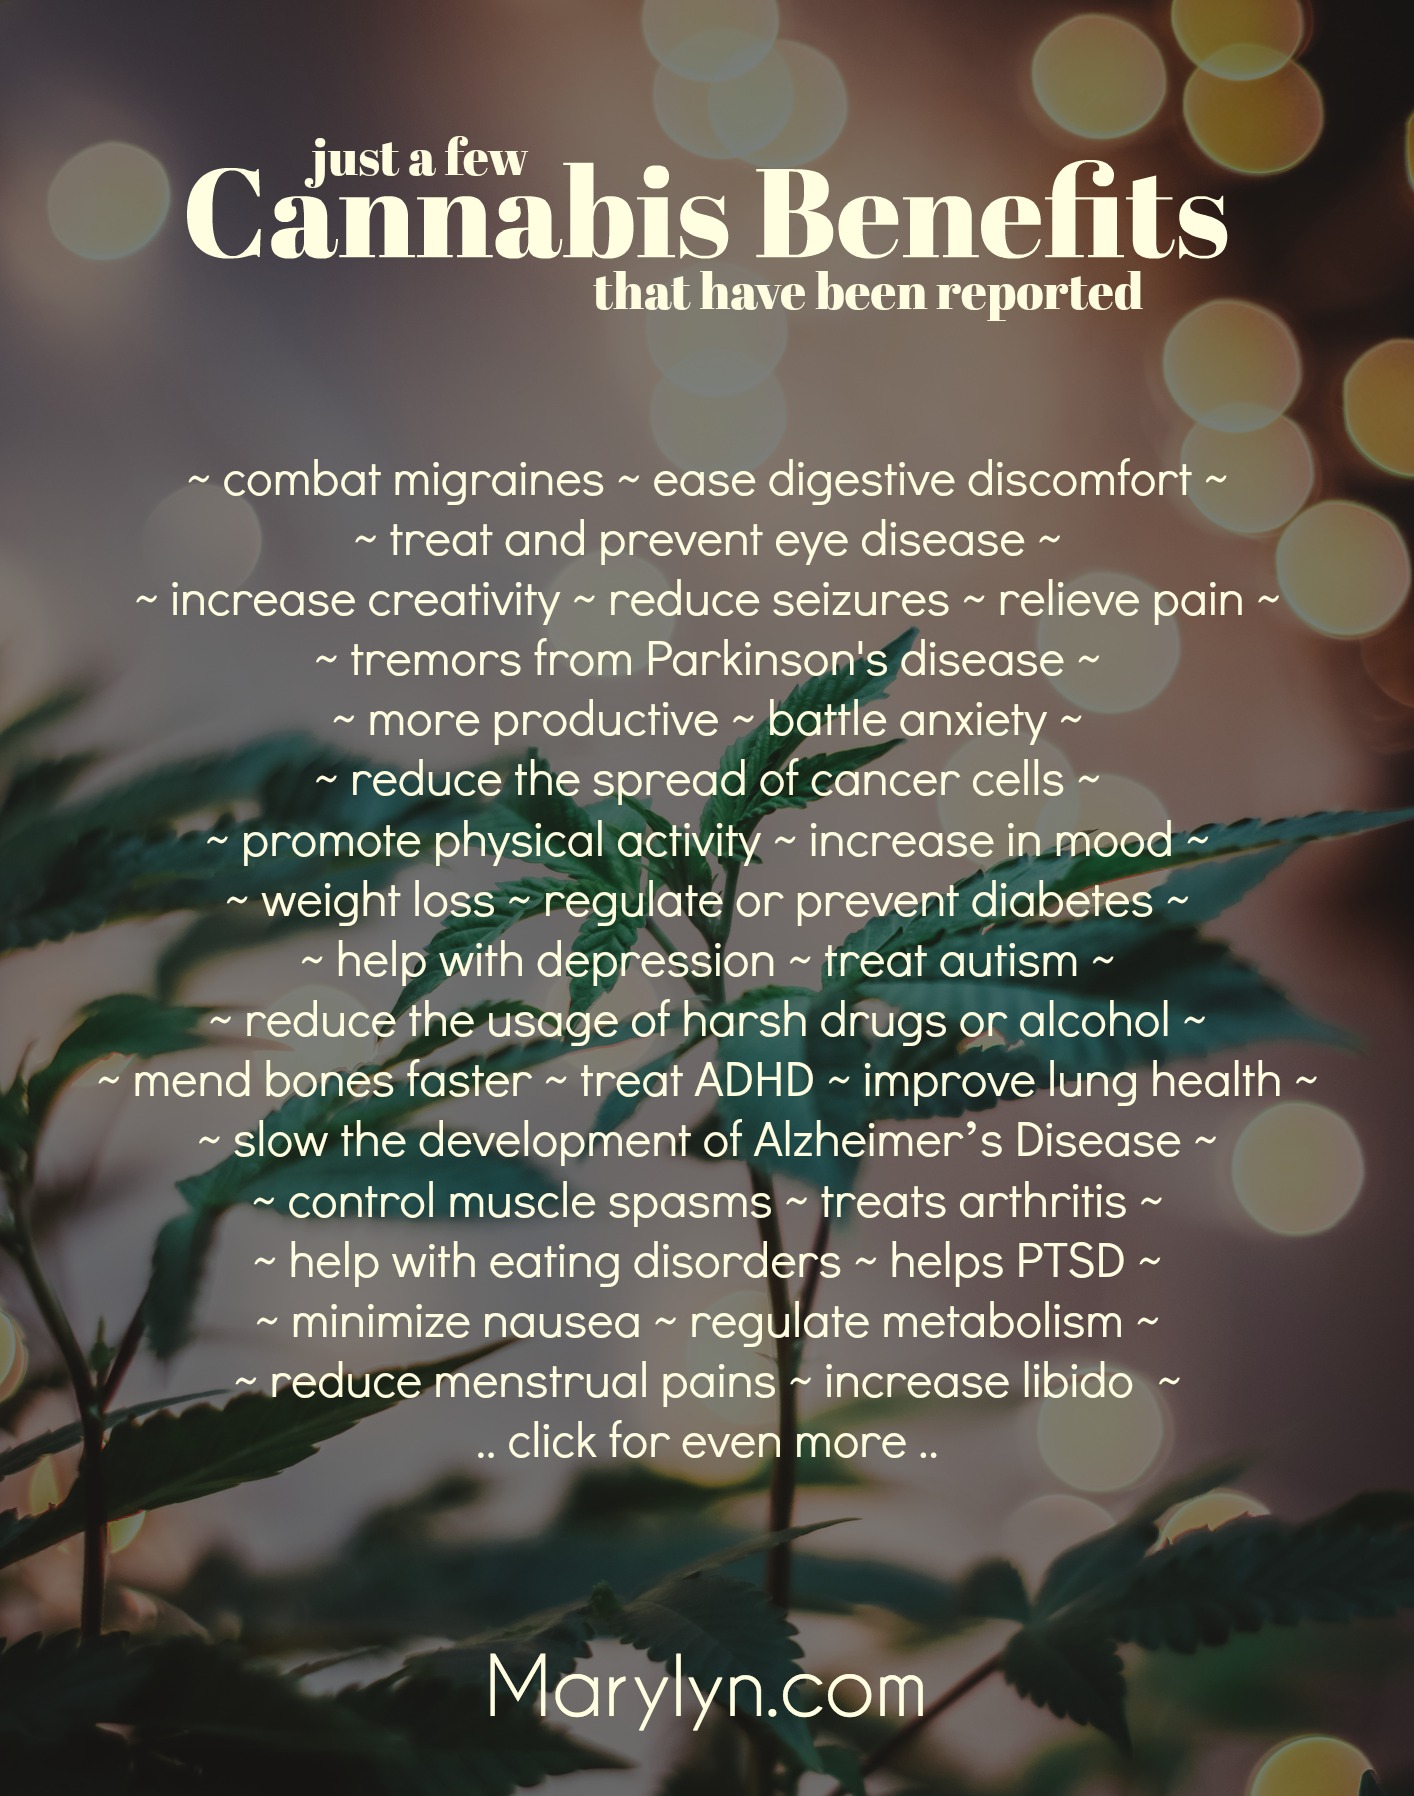 cannabis benefits by marylyn media